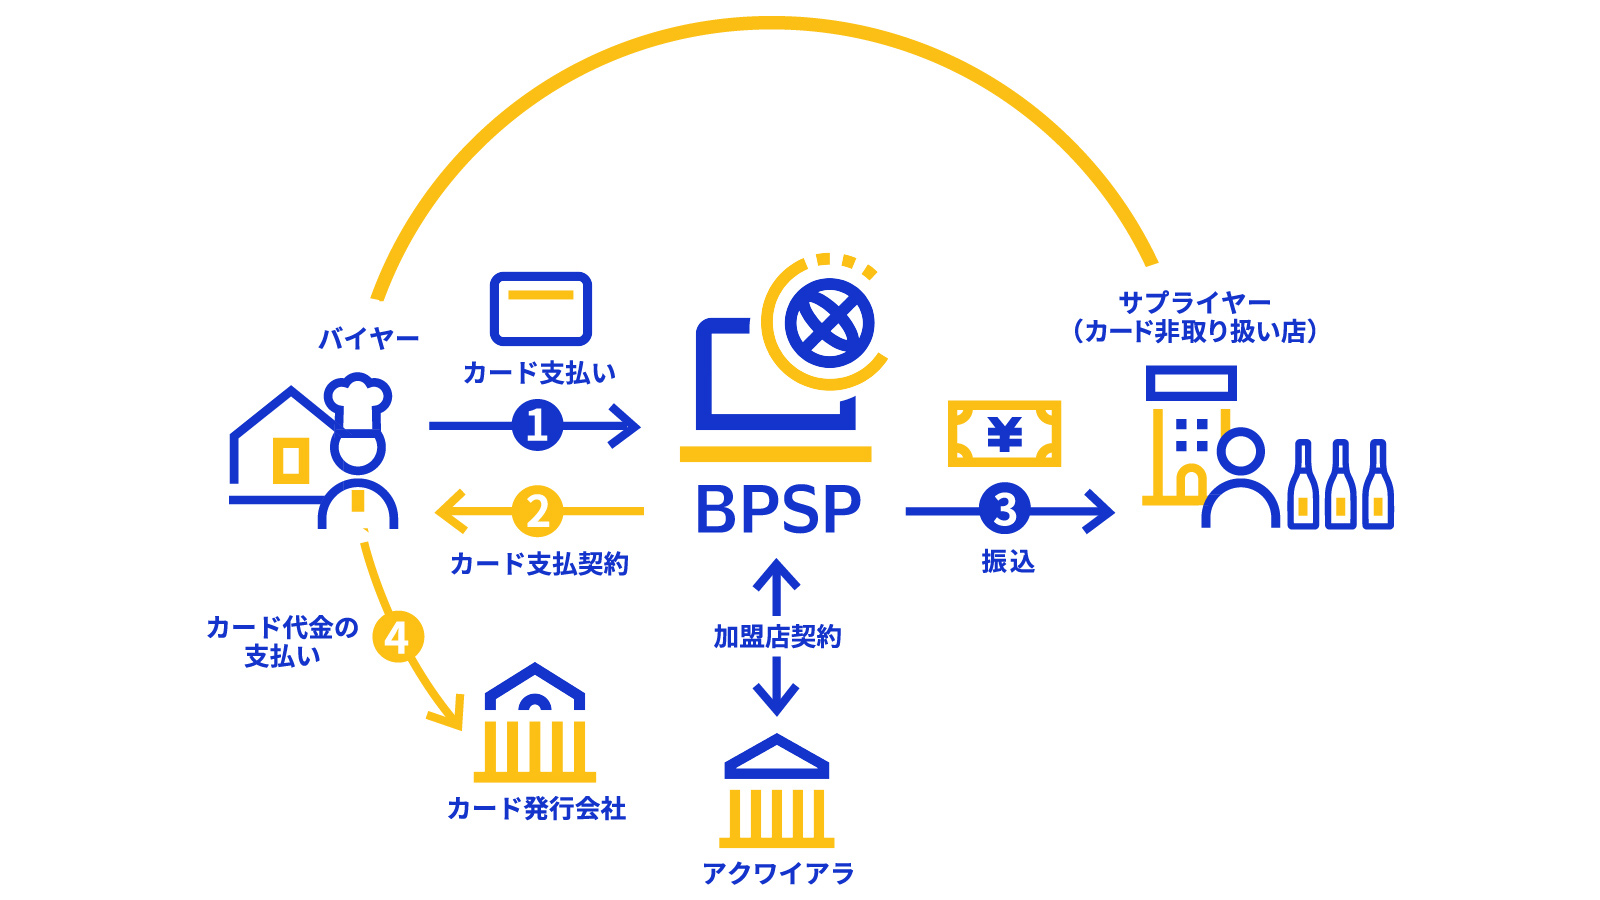 BPSPの活用イメージ図解